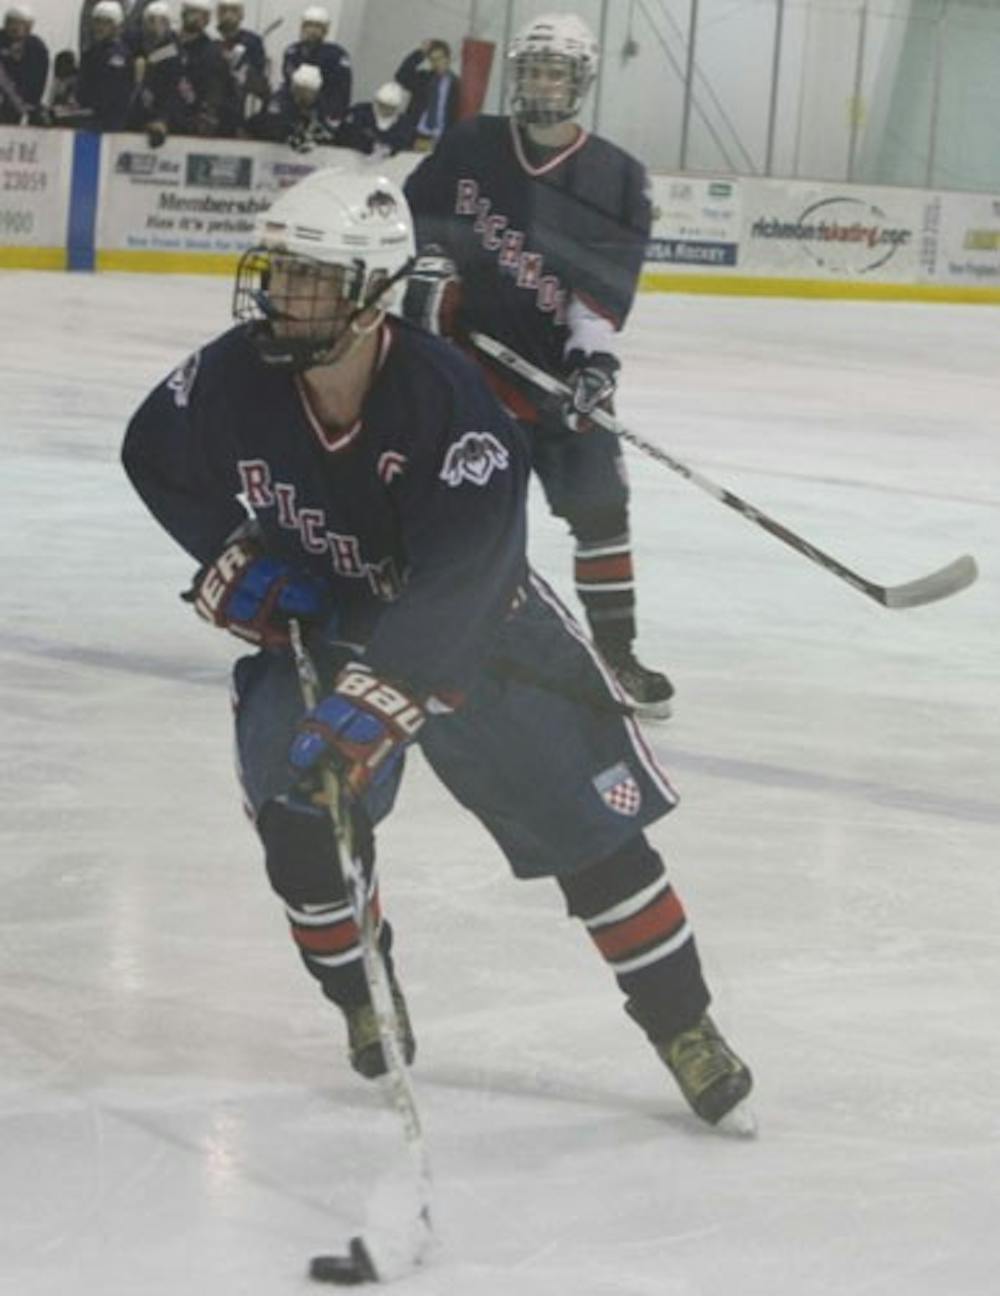 Ice Hockey Captain, Senior Matt Improta, during a recent tournament against UVa.